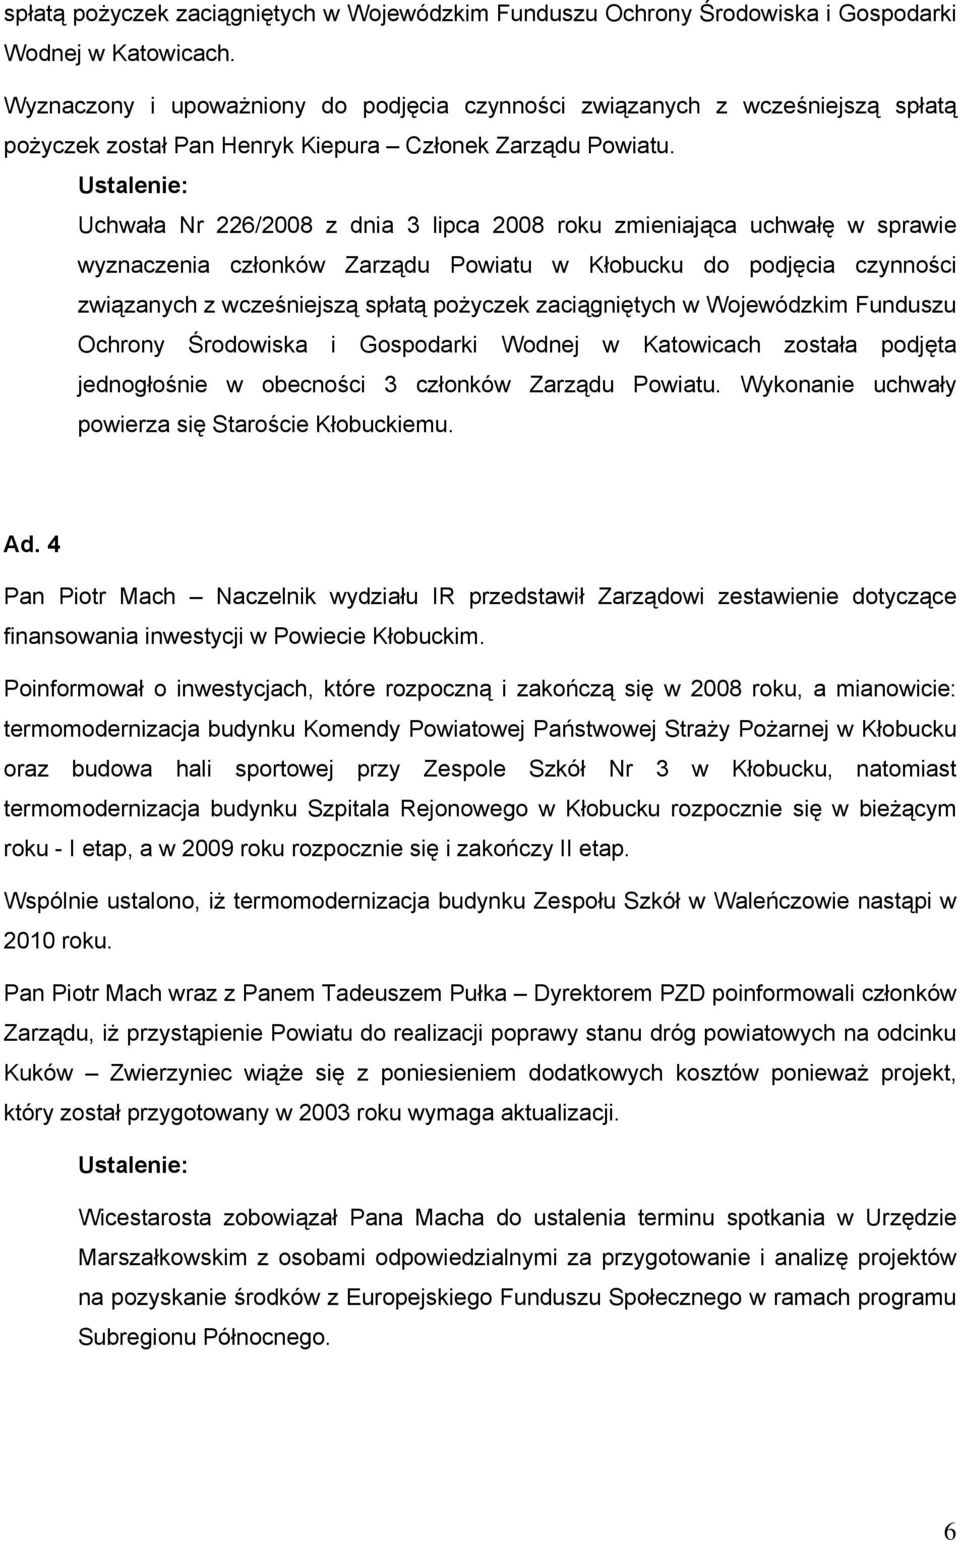 Uchwała Nr 226/2008 z dnia 3 lipca 2008 roku zmieniająca uchwałę w sprawie wyznaczenia członków Zarządu Powiatu w Kłobucku do podjęcia czynności związanych z wcześniejszą spłatą pożyczek